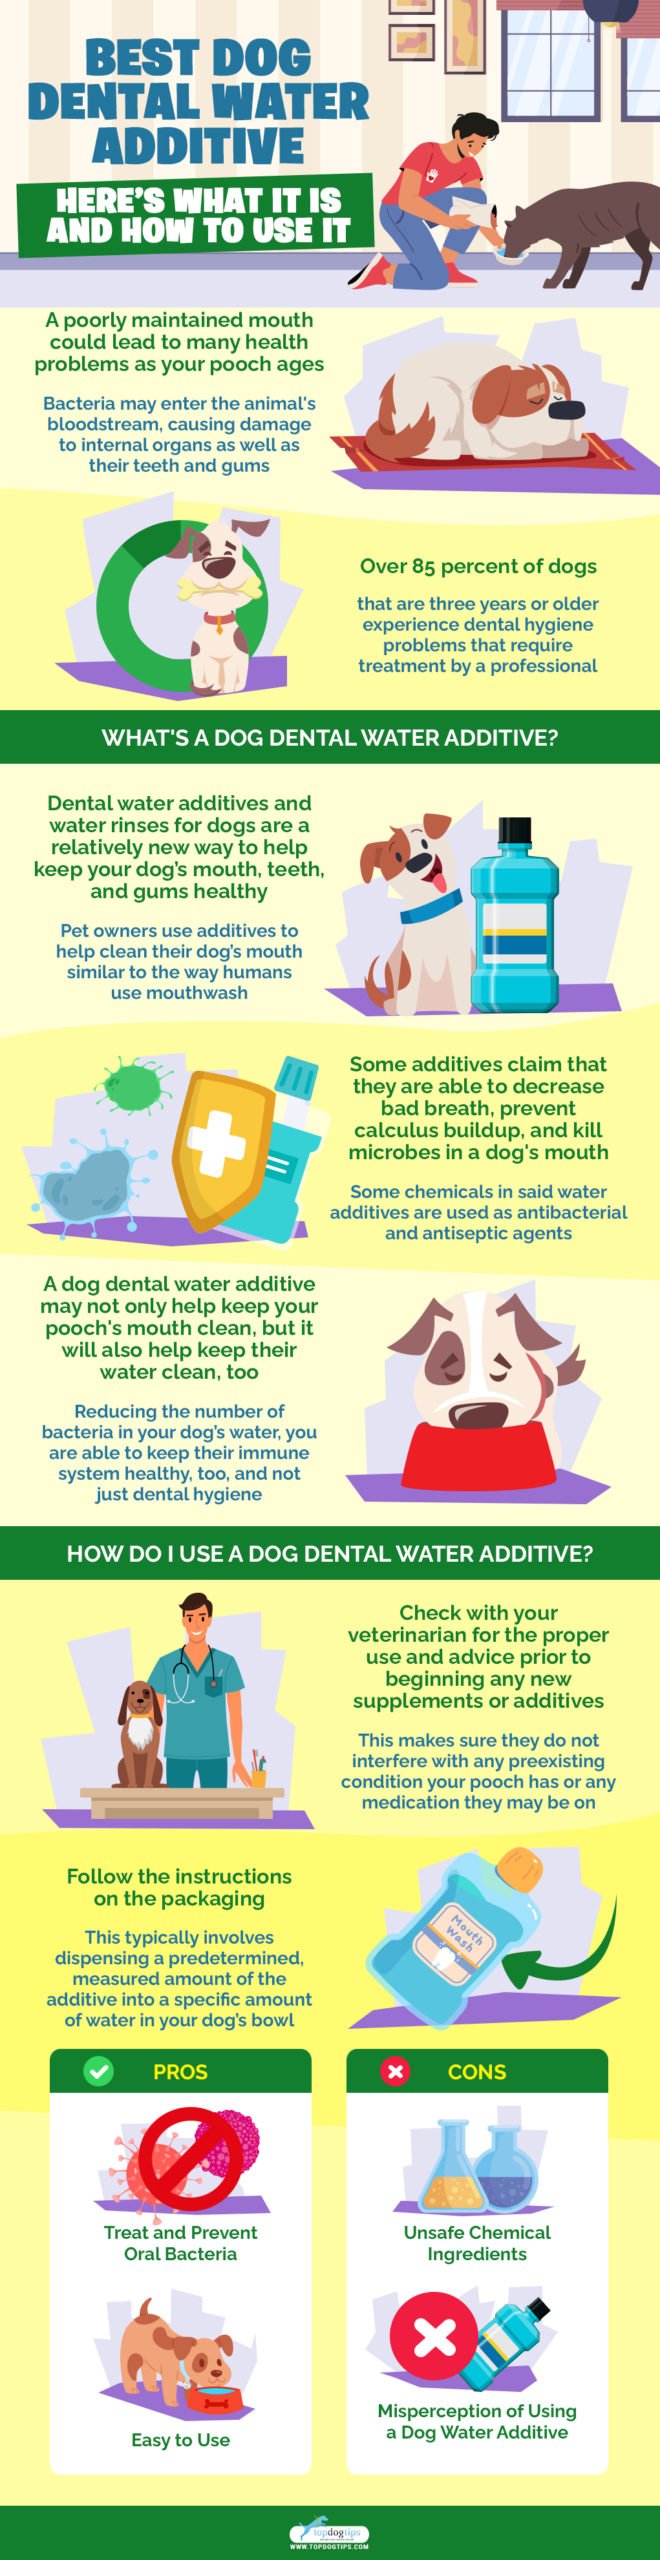 Beste hond tandheelkundig water additief heres wat het is en hoe het te gebruiken